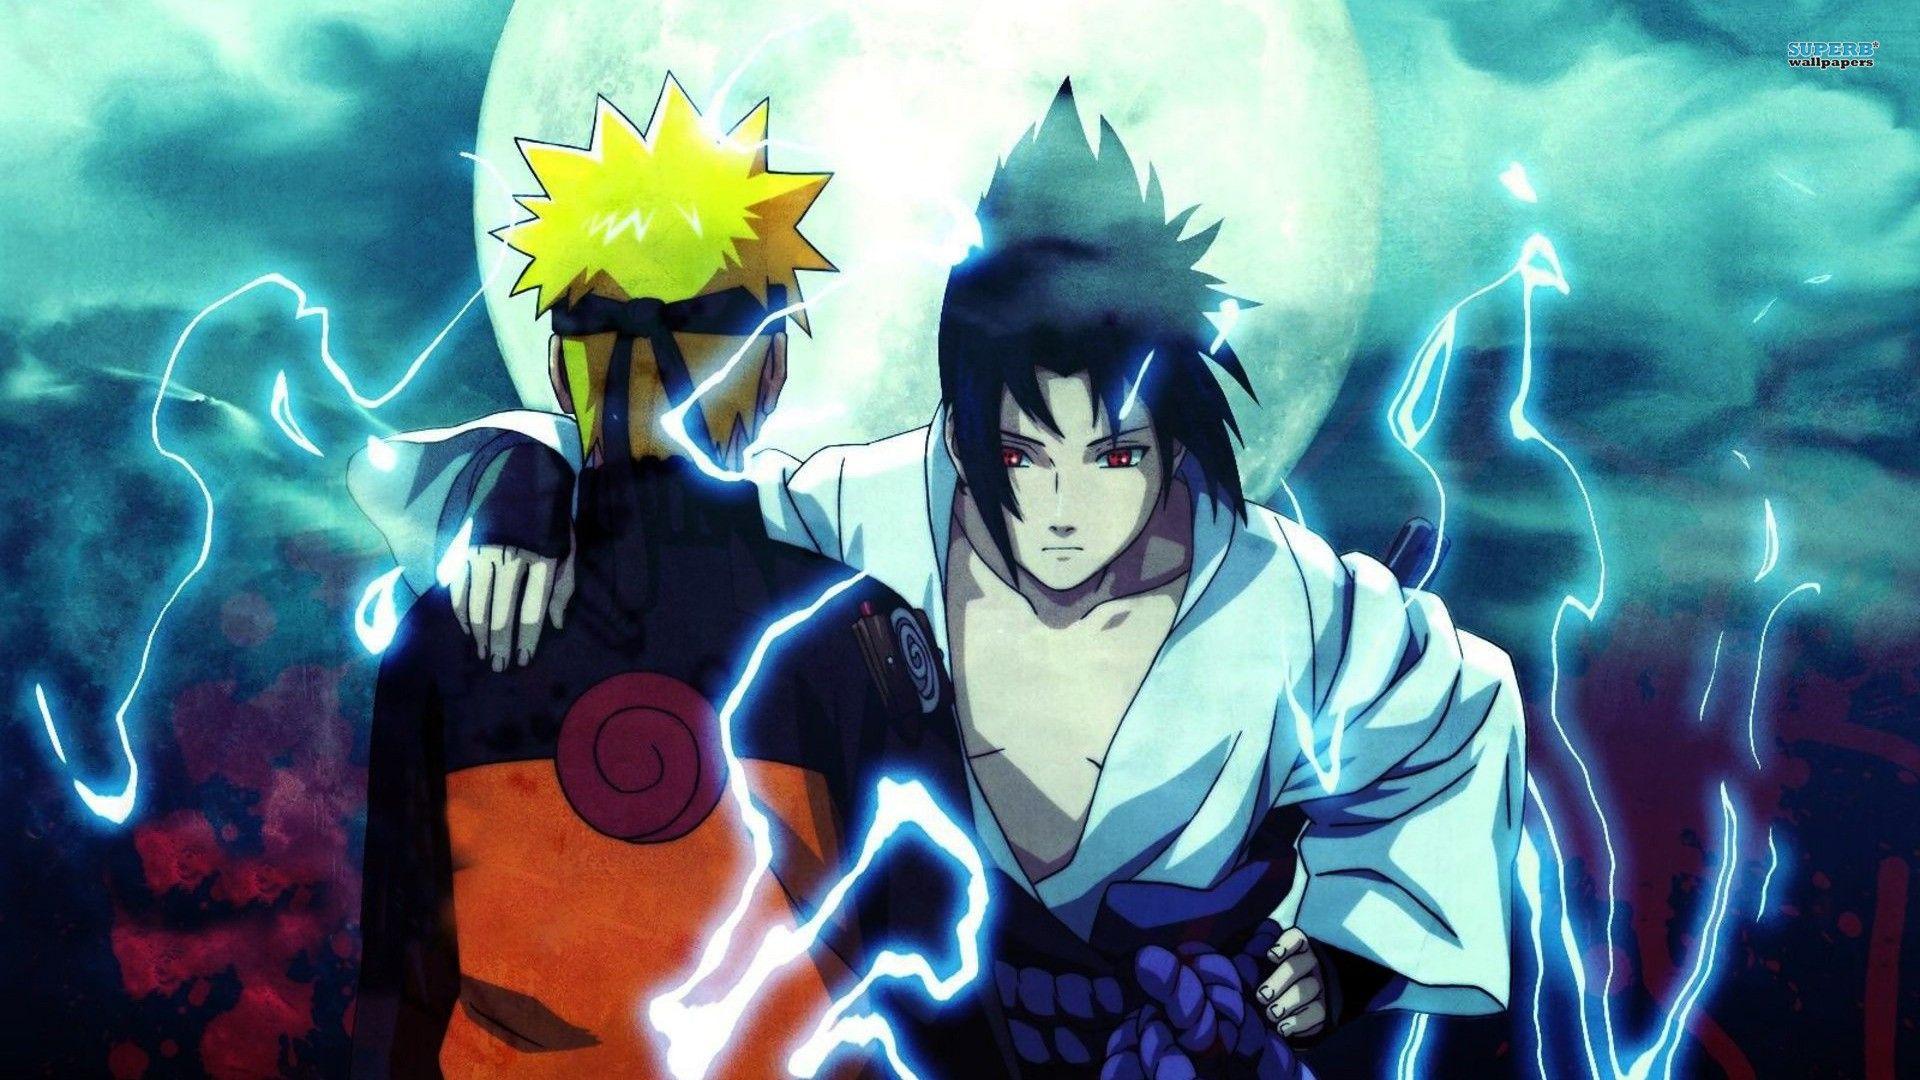 Naruto Sasuke Shippuden Picture HD Wallpaper of Anime. Naruto y